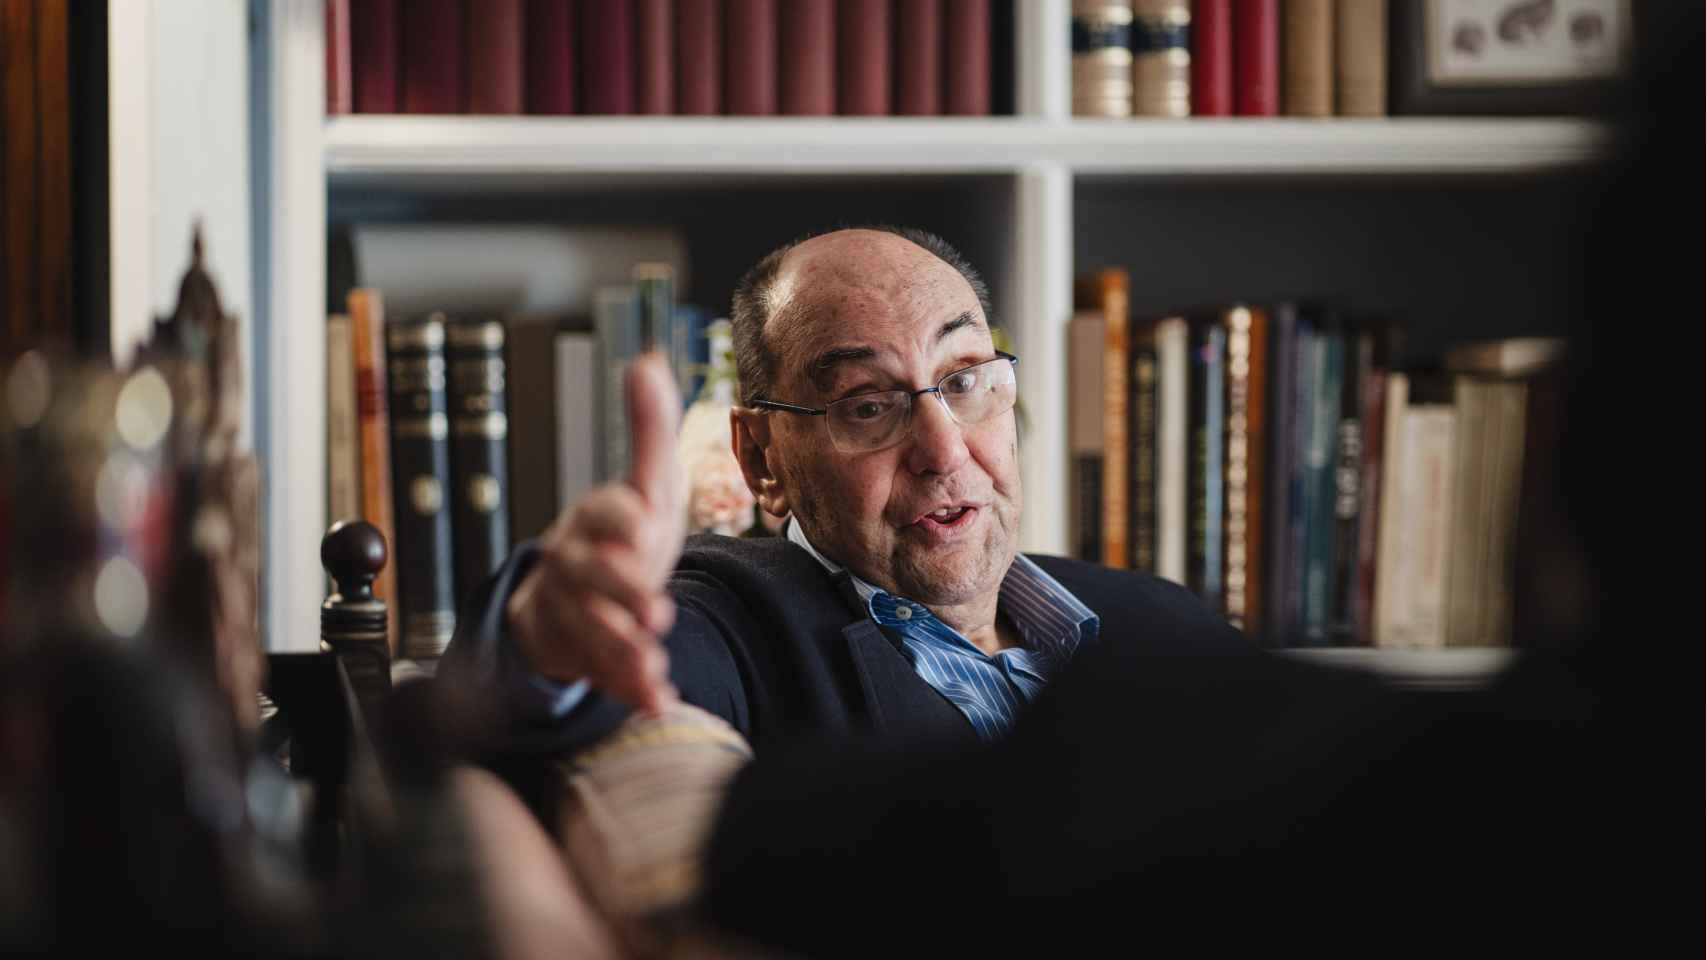 Vidal-Quadras, en su casa vigilada por la policía, durante un momento de la entrevista.